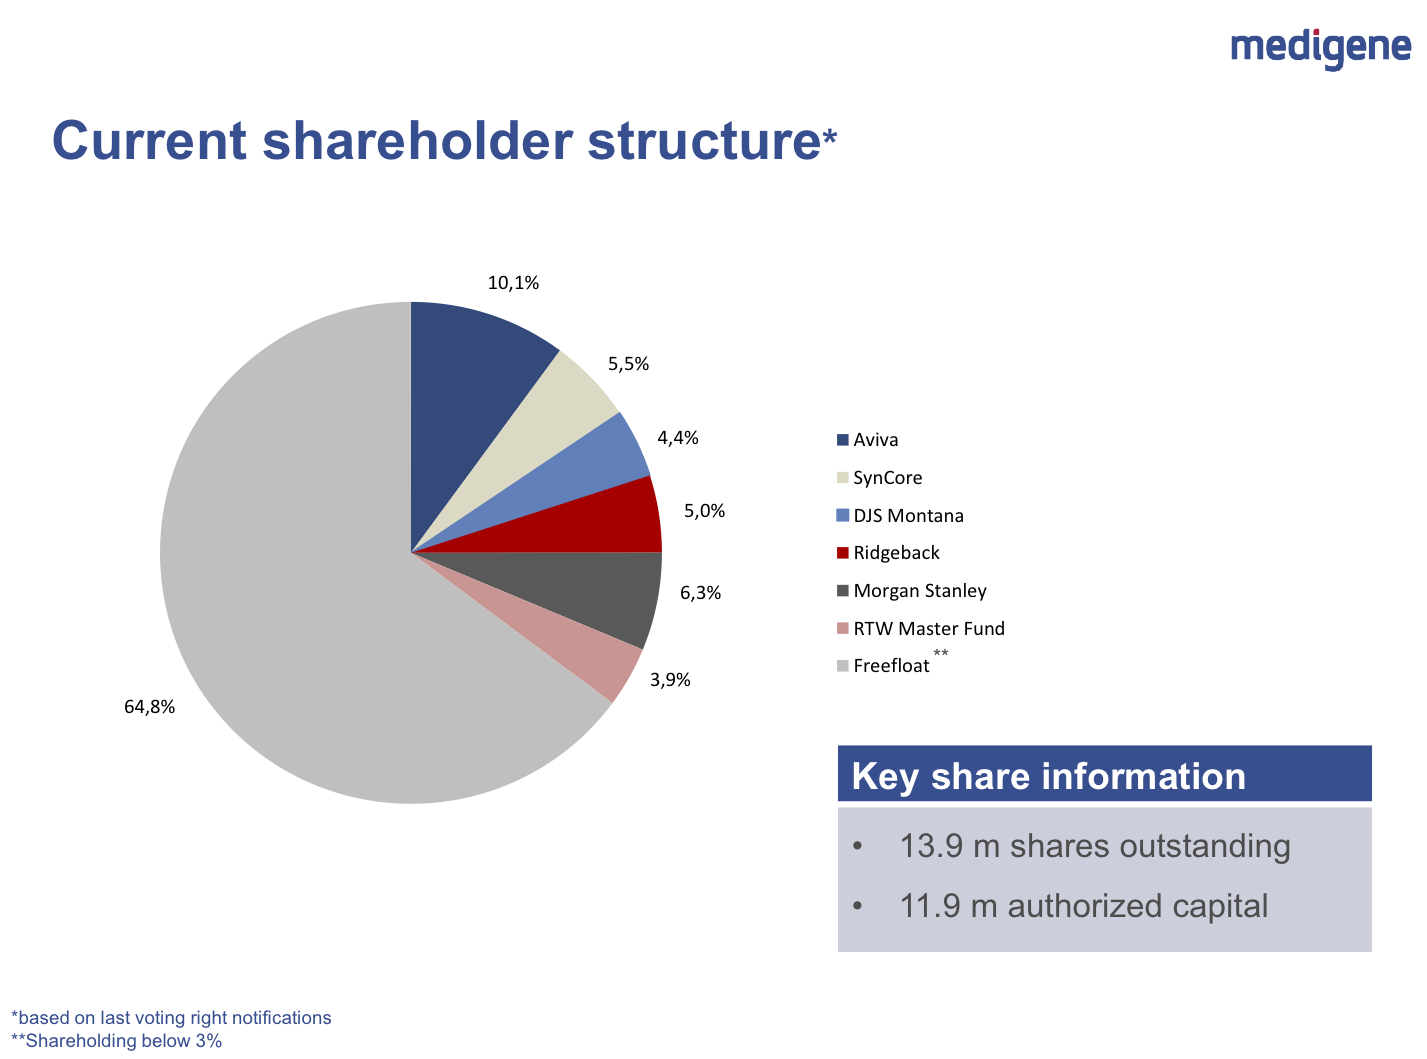 mdg-shareholders-q1-2015.png